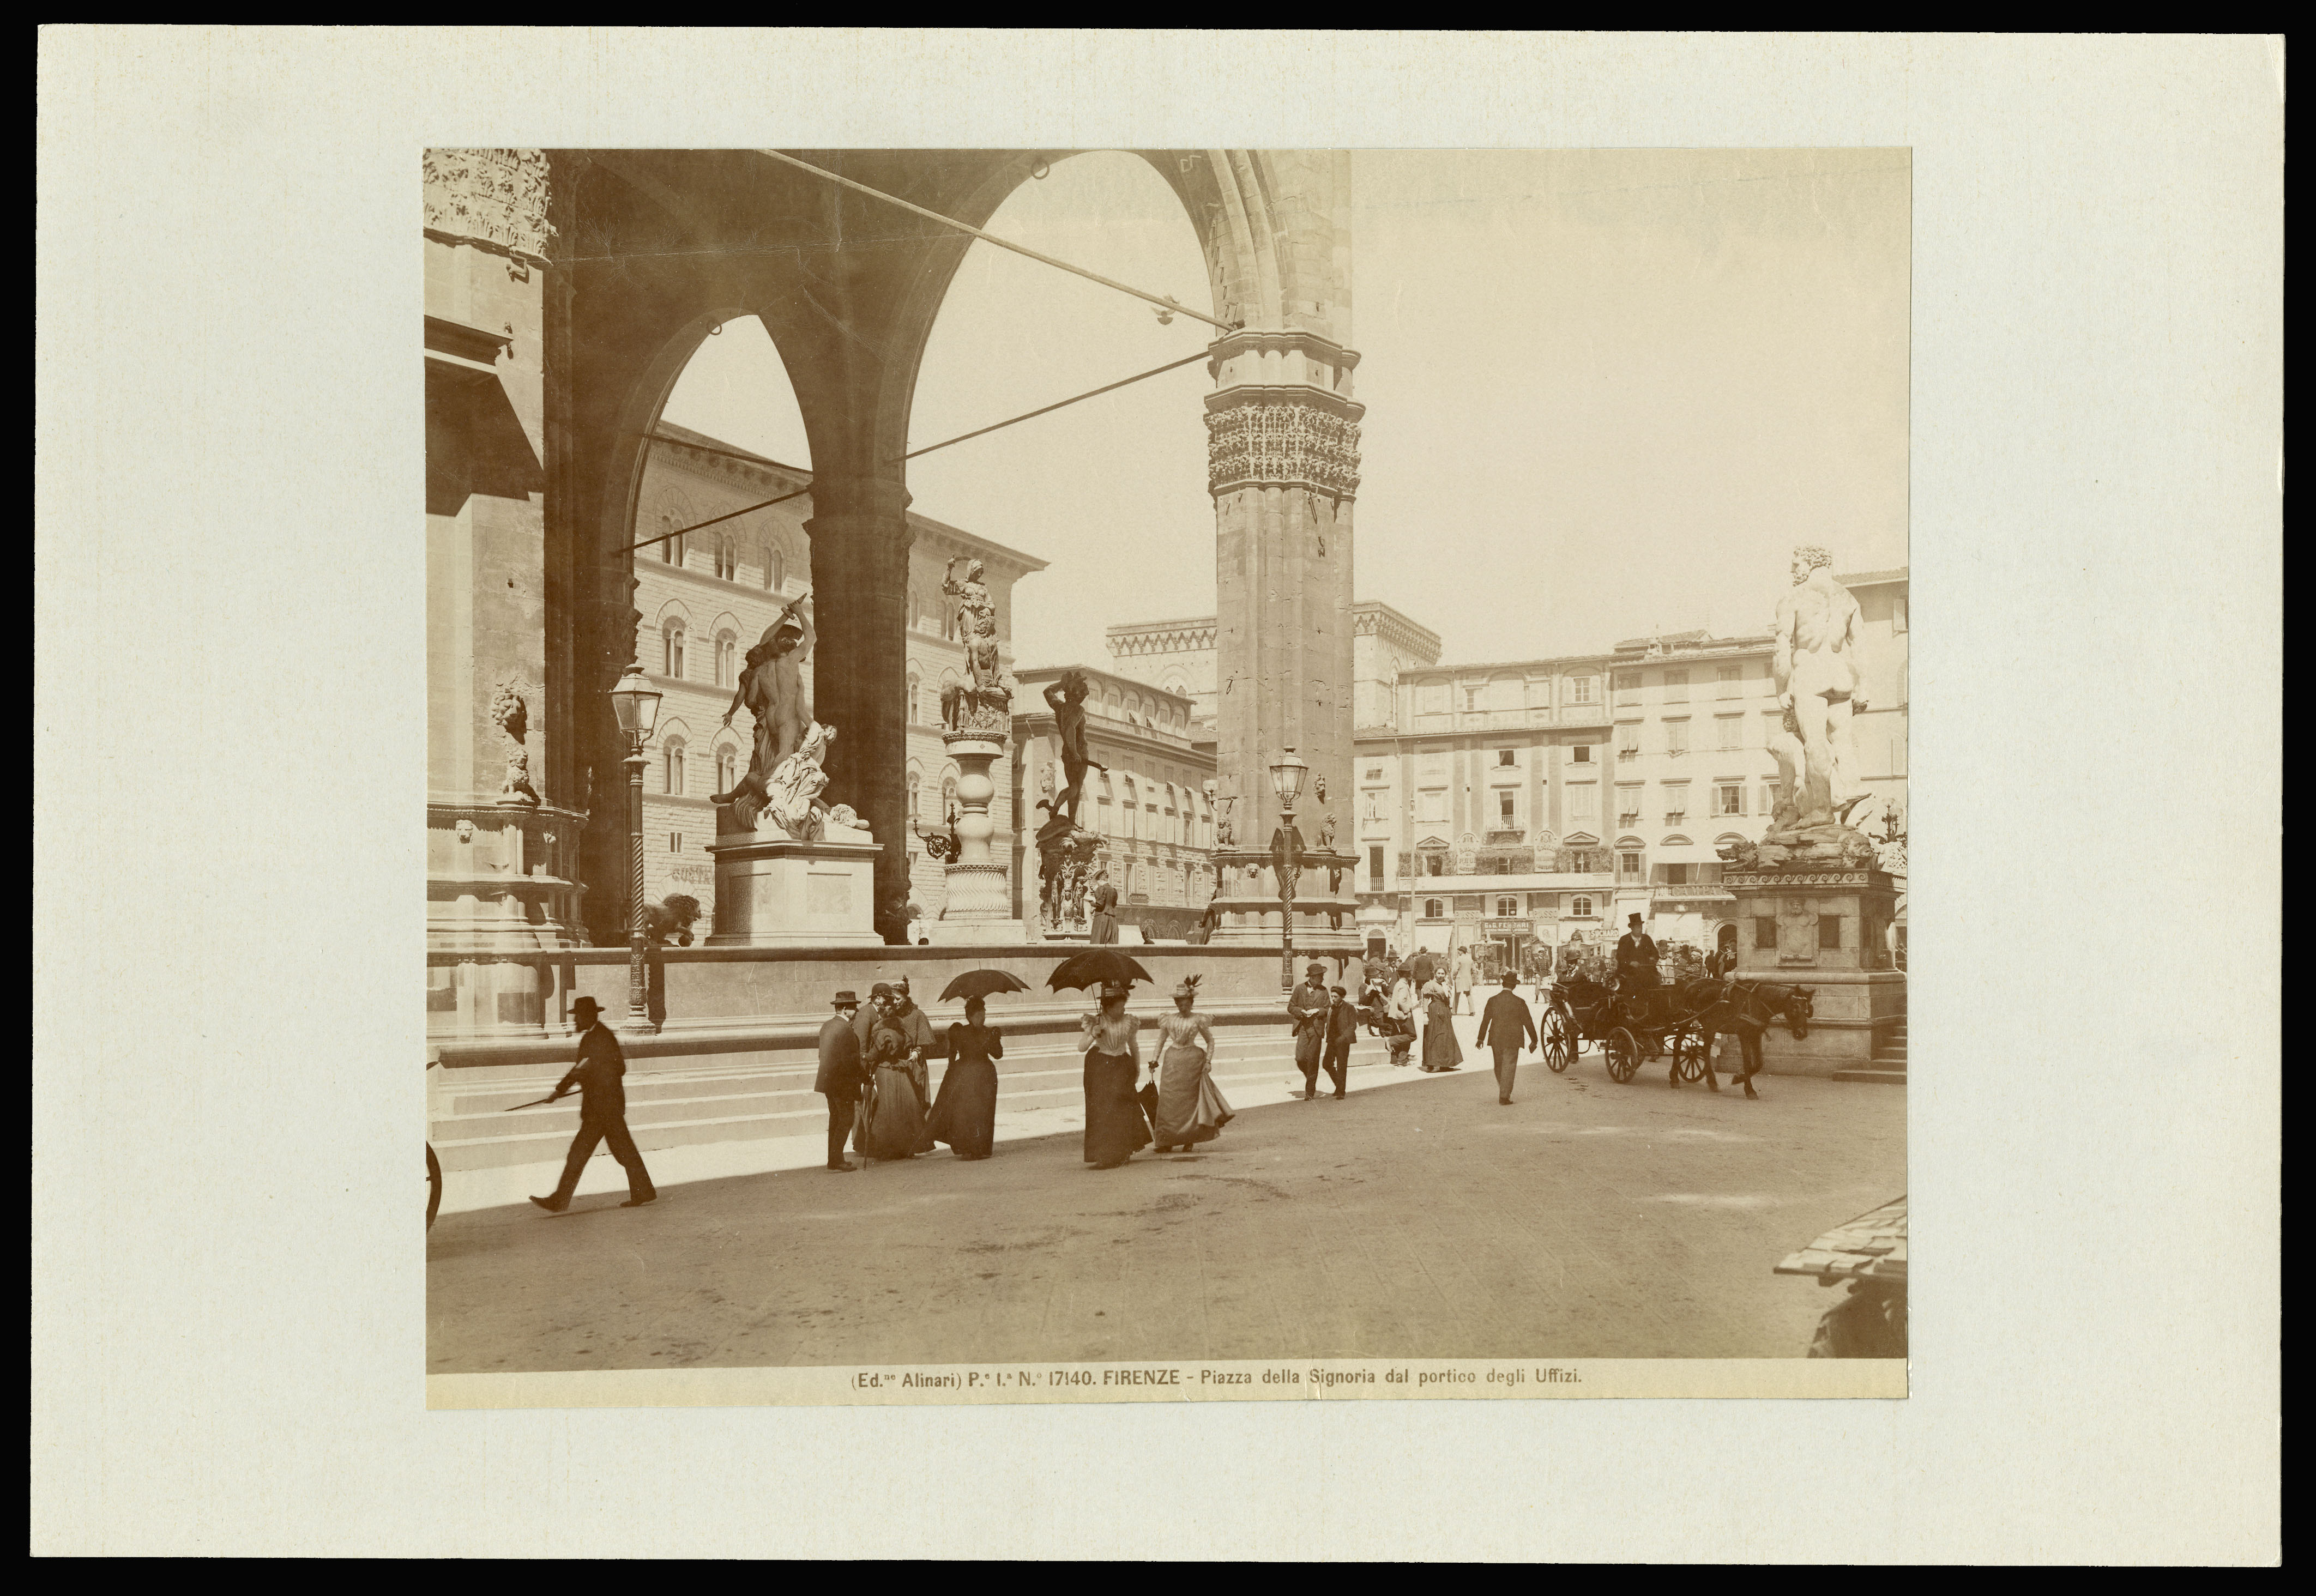 Fratelli Alinari: Florenz, Piazza della Signoria das Portico degli Uffizi, ca. 1890-1900